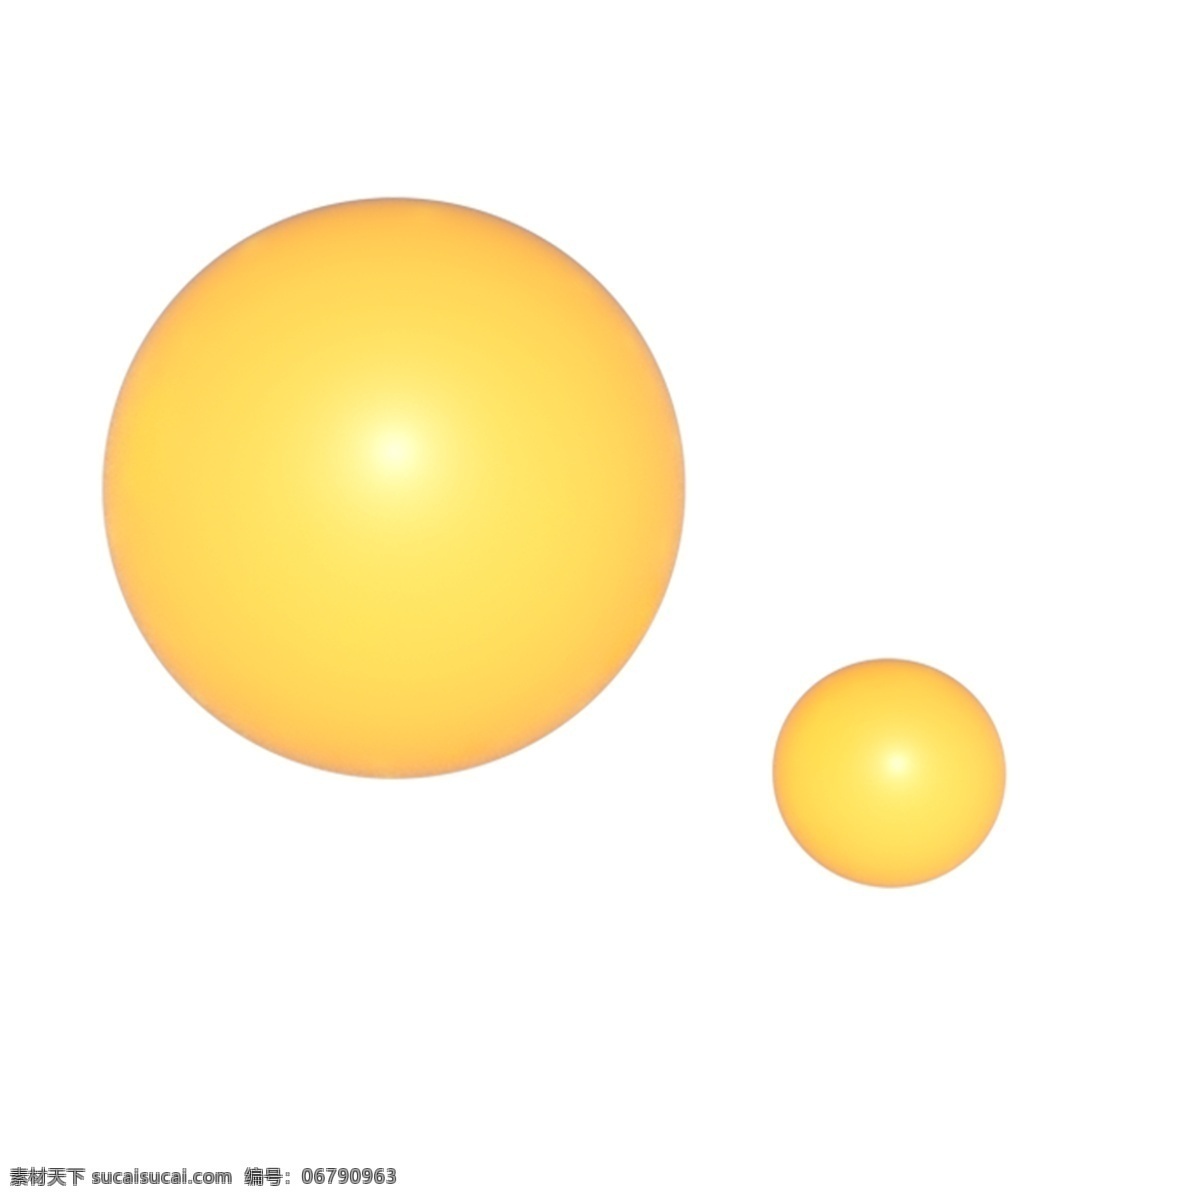 两个 黄色 圆球 免 抠 图 圆形球 黄色的圆球 卡通图案 卡通插画 漂亮 装饰 球面 3d球 免抠图